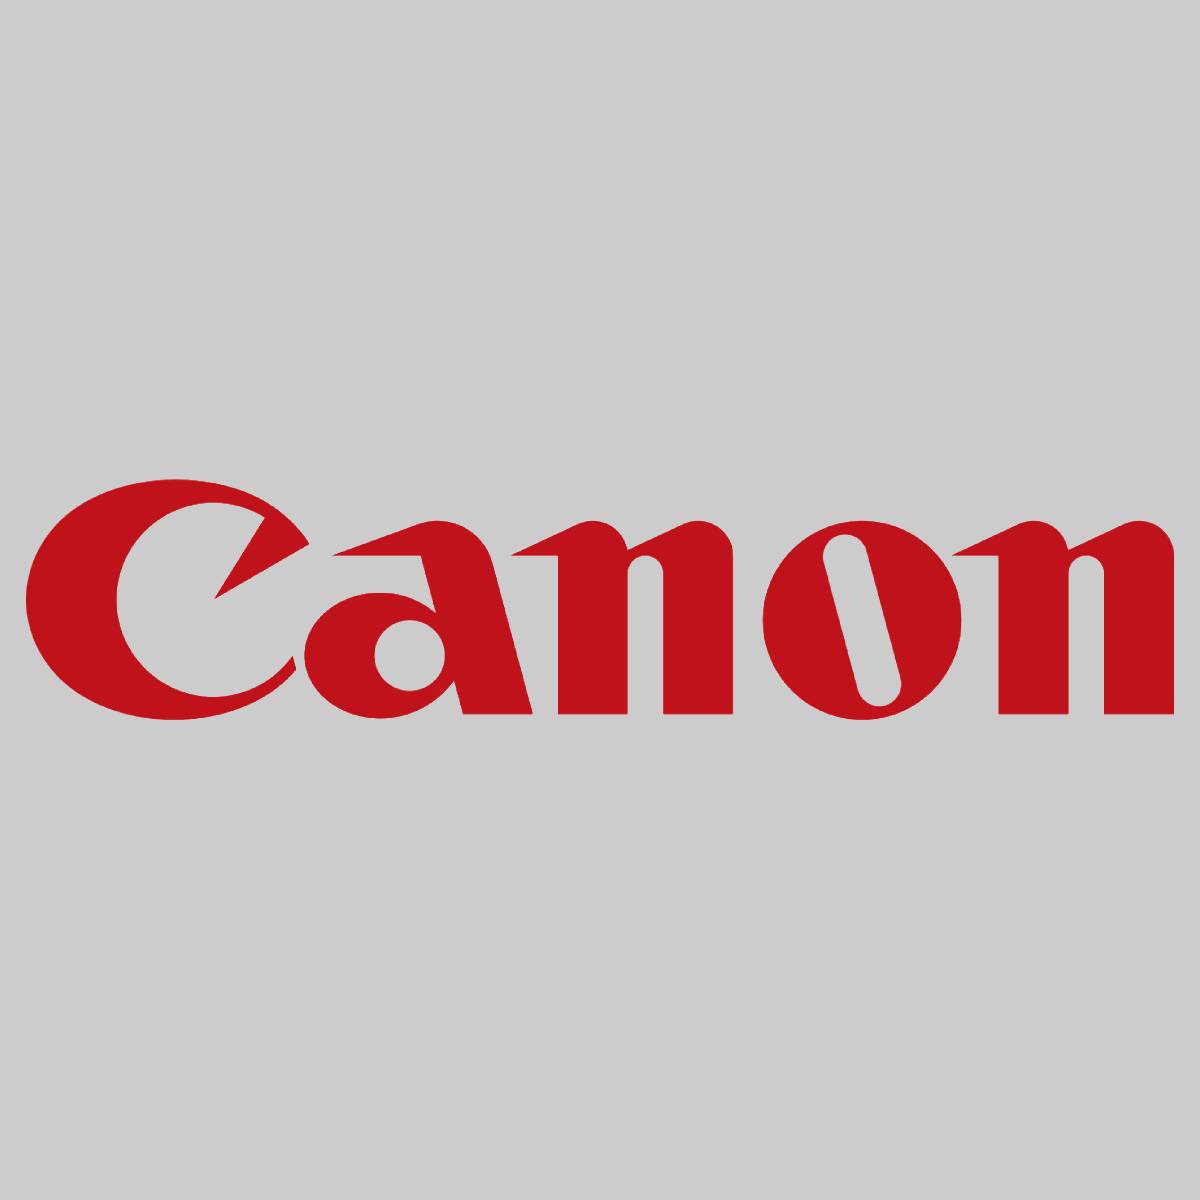 "Original Canon Main Controller PCB Assy FM0-0339-000 imageRunner Adv C5030 C503